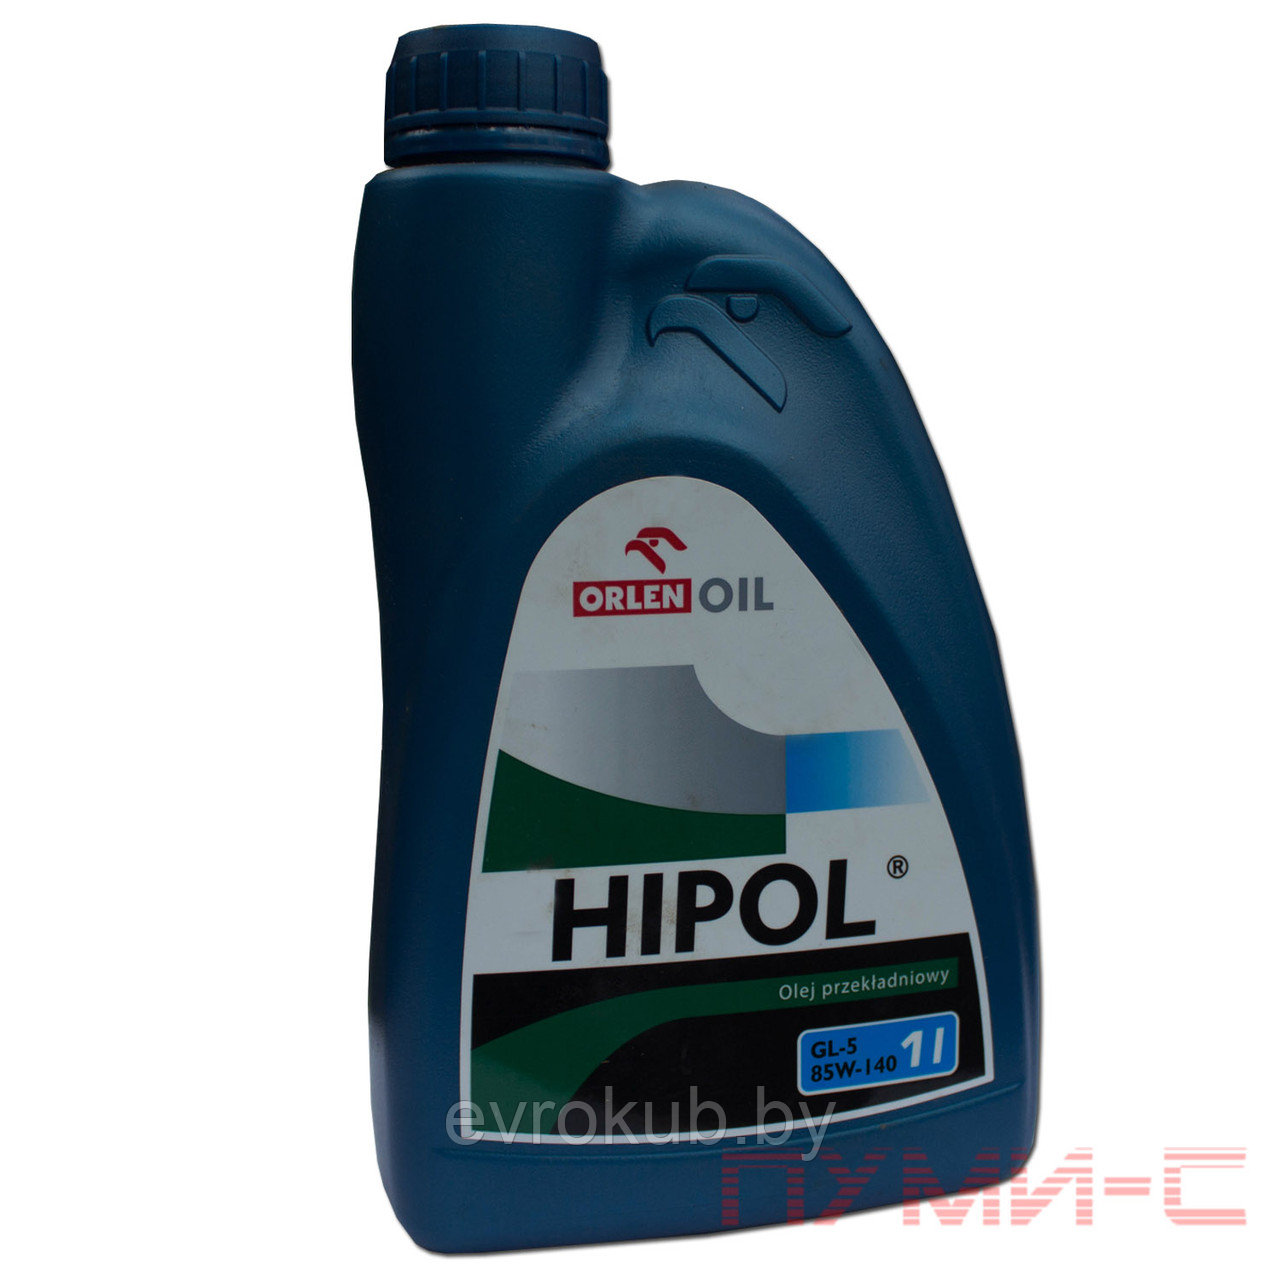 Трансмиссионное масло Orlen Oil Hipol 85w-140